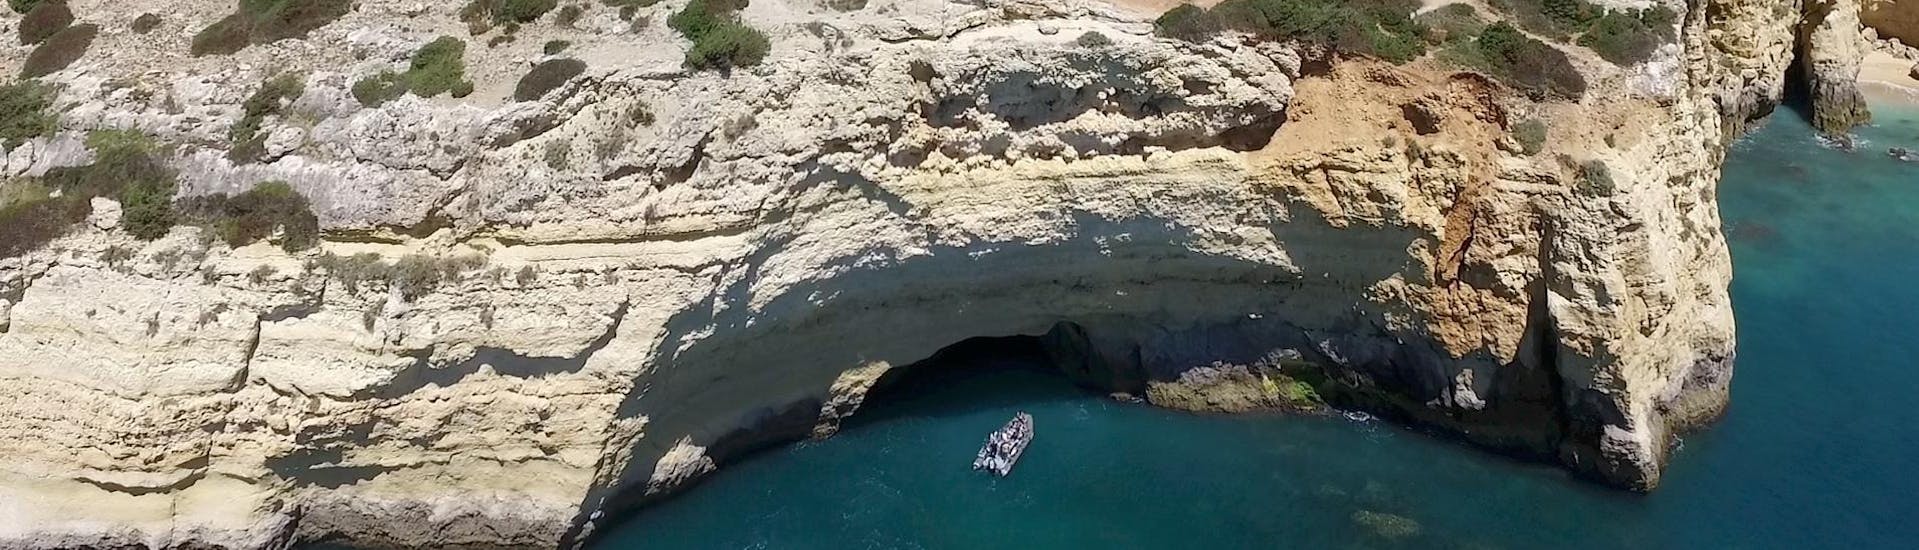 Während einer Bootstour von Portimao zu den Höhlen von Benagil mit Seadventure Boat Trips fährt ein Boot entlang der Küste von Portimao.